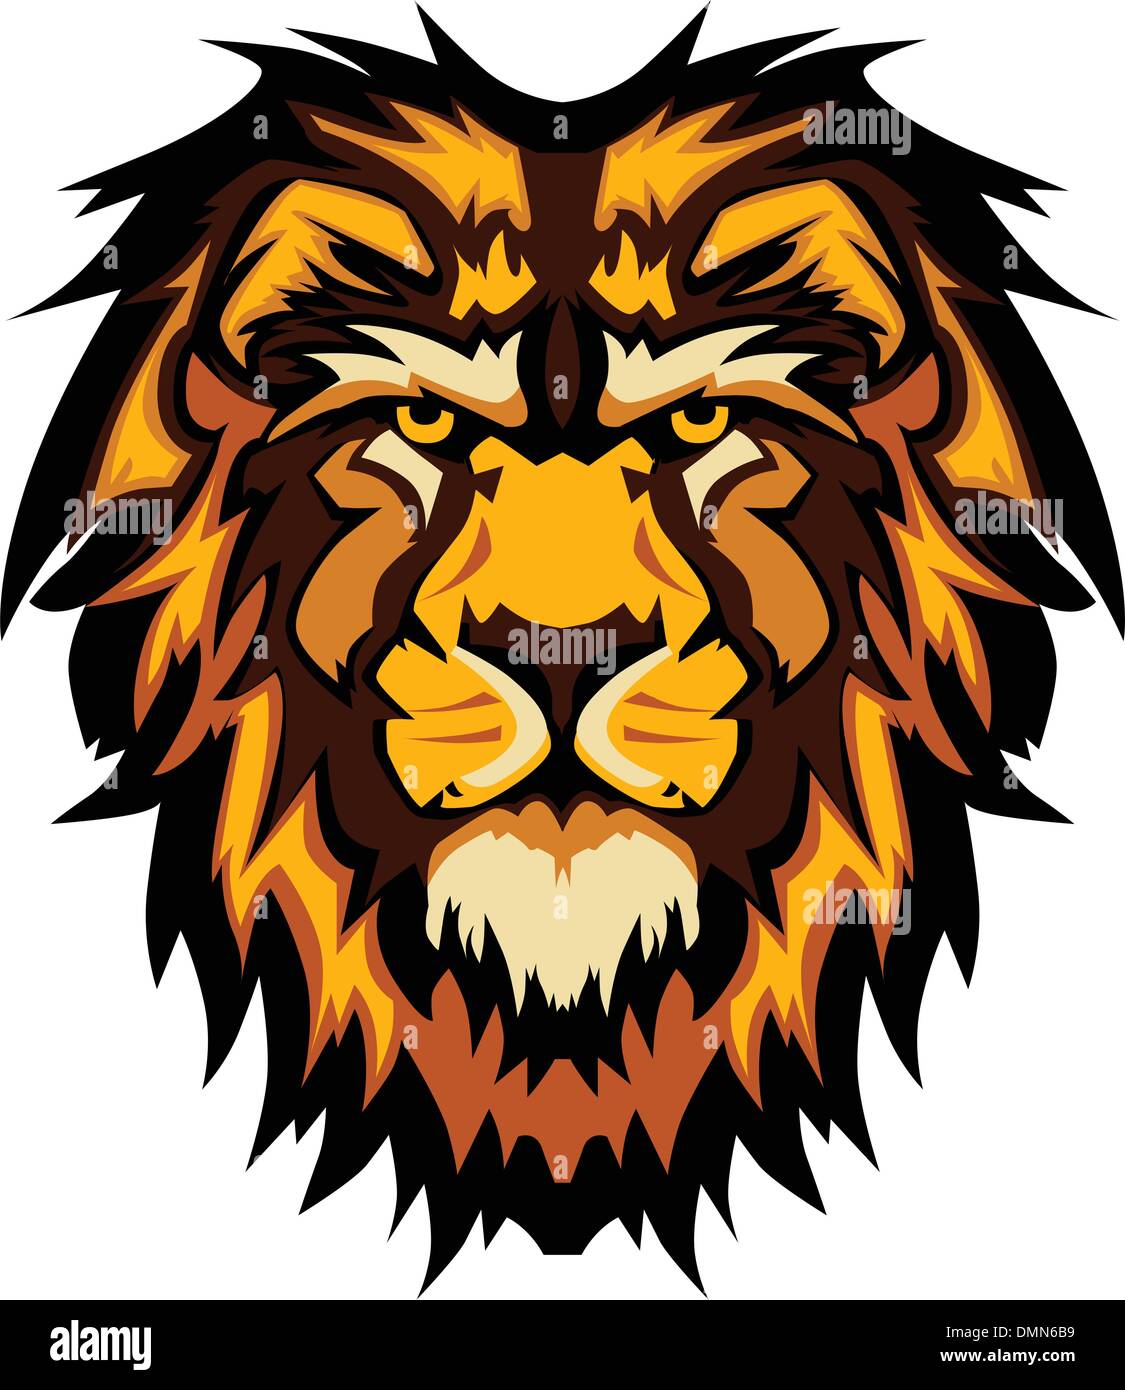 Cabeza de León mascota gráfico imagen vectorial Ilustración del Vector